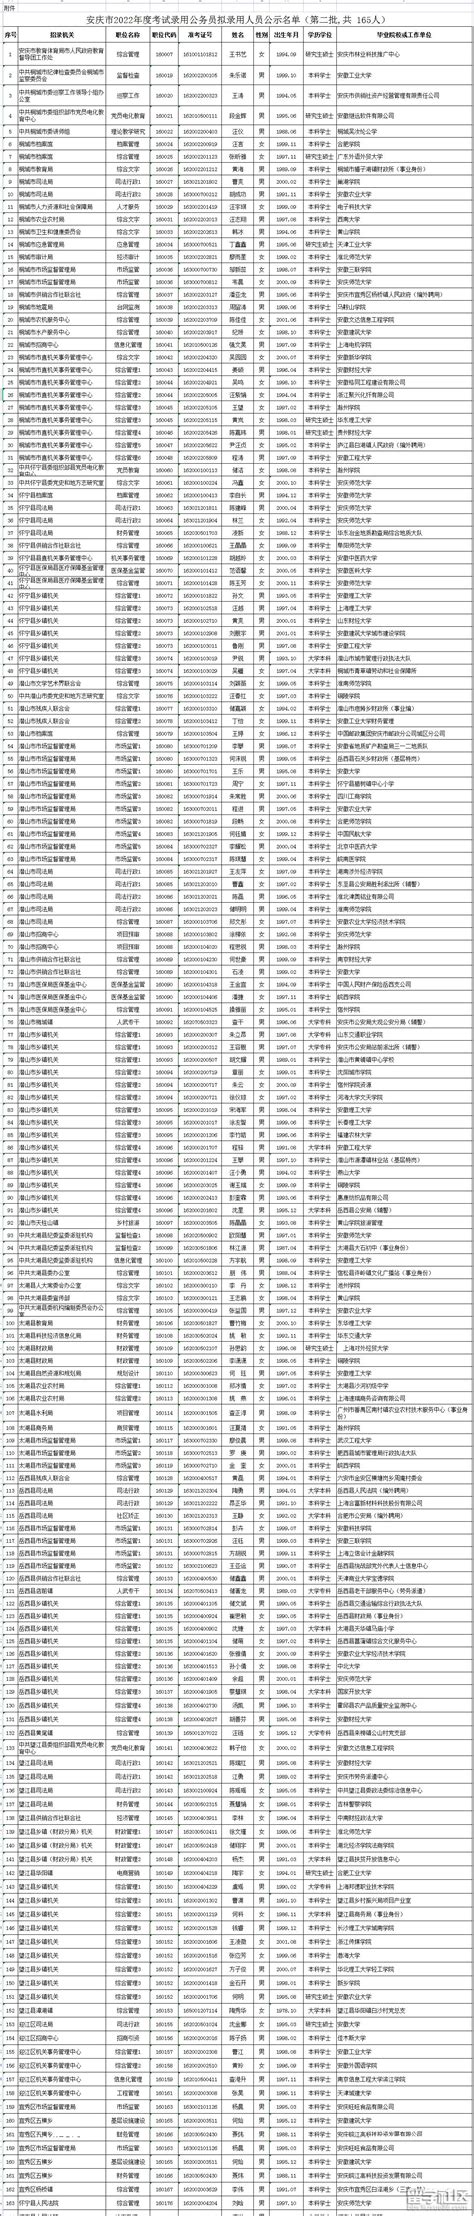 安庆市第十中学简介-安庆市第十中学排名|专业数量|创办时间-排行榜123网